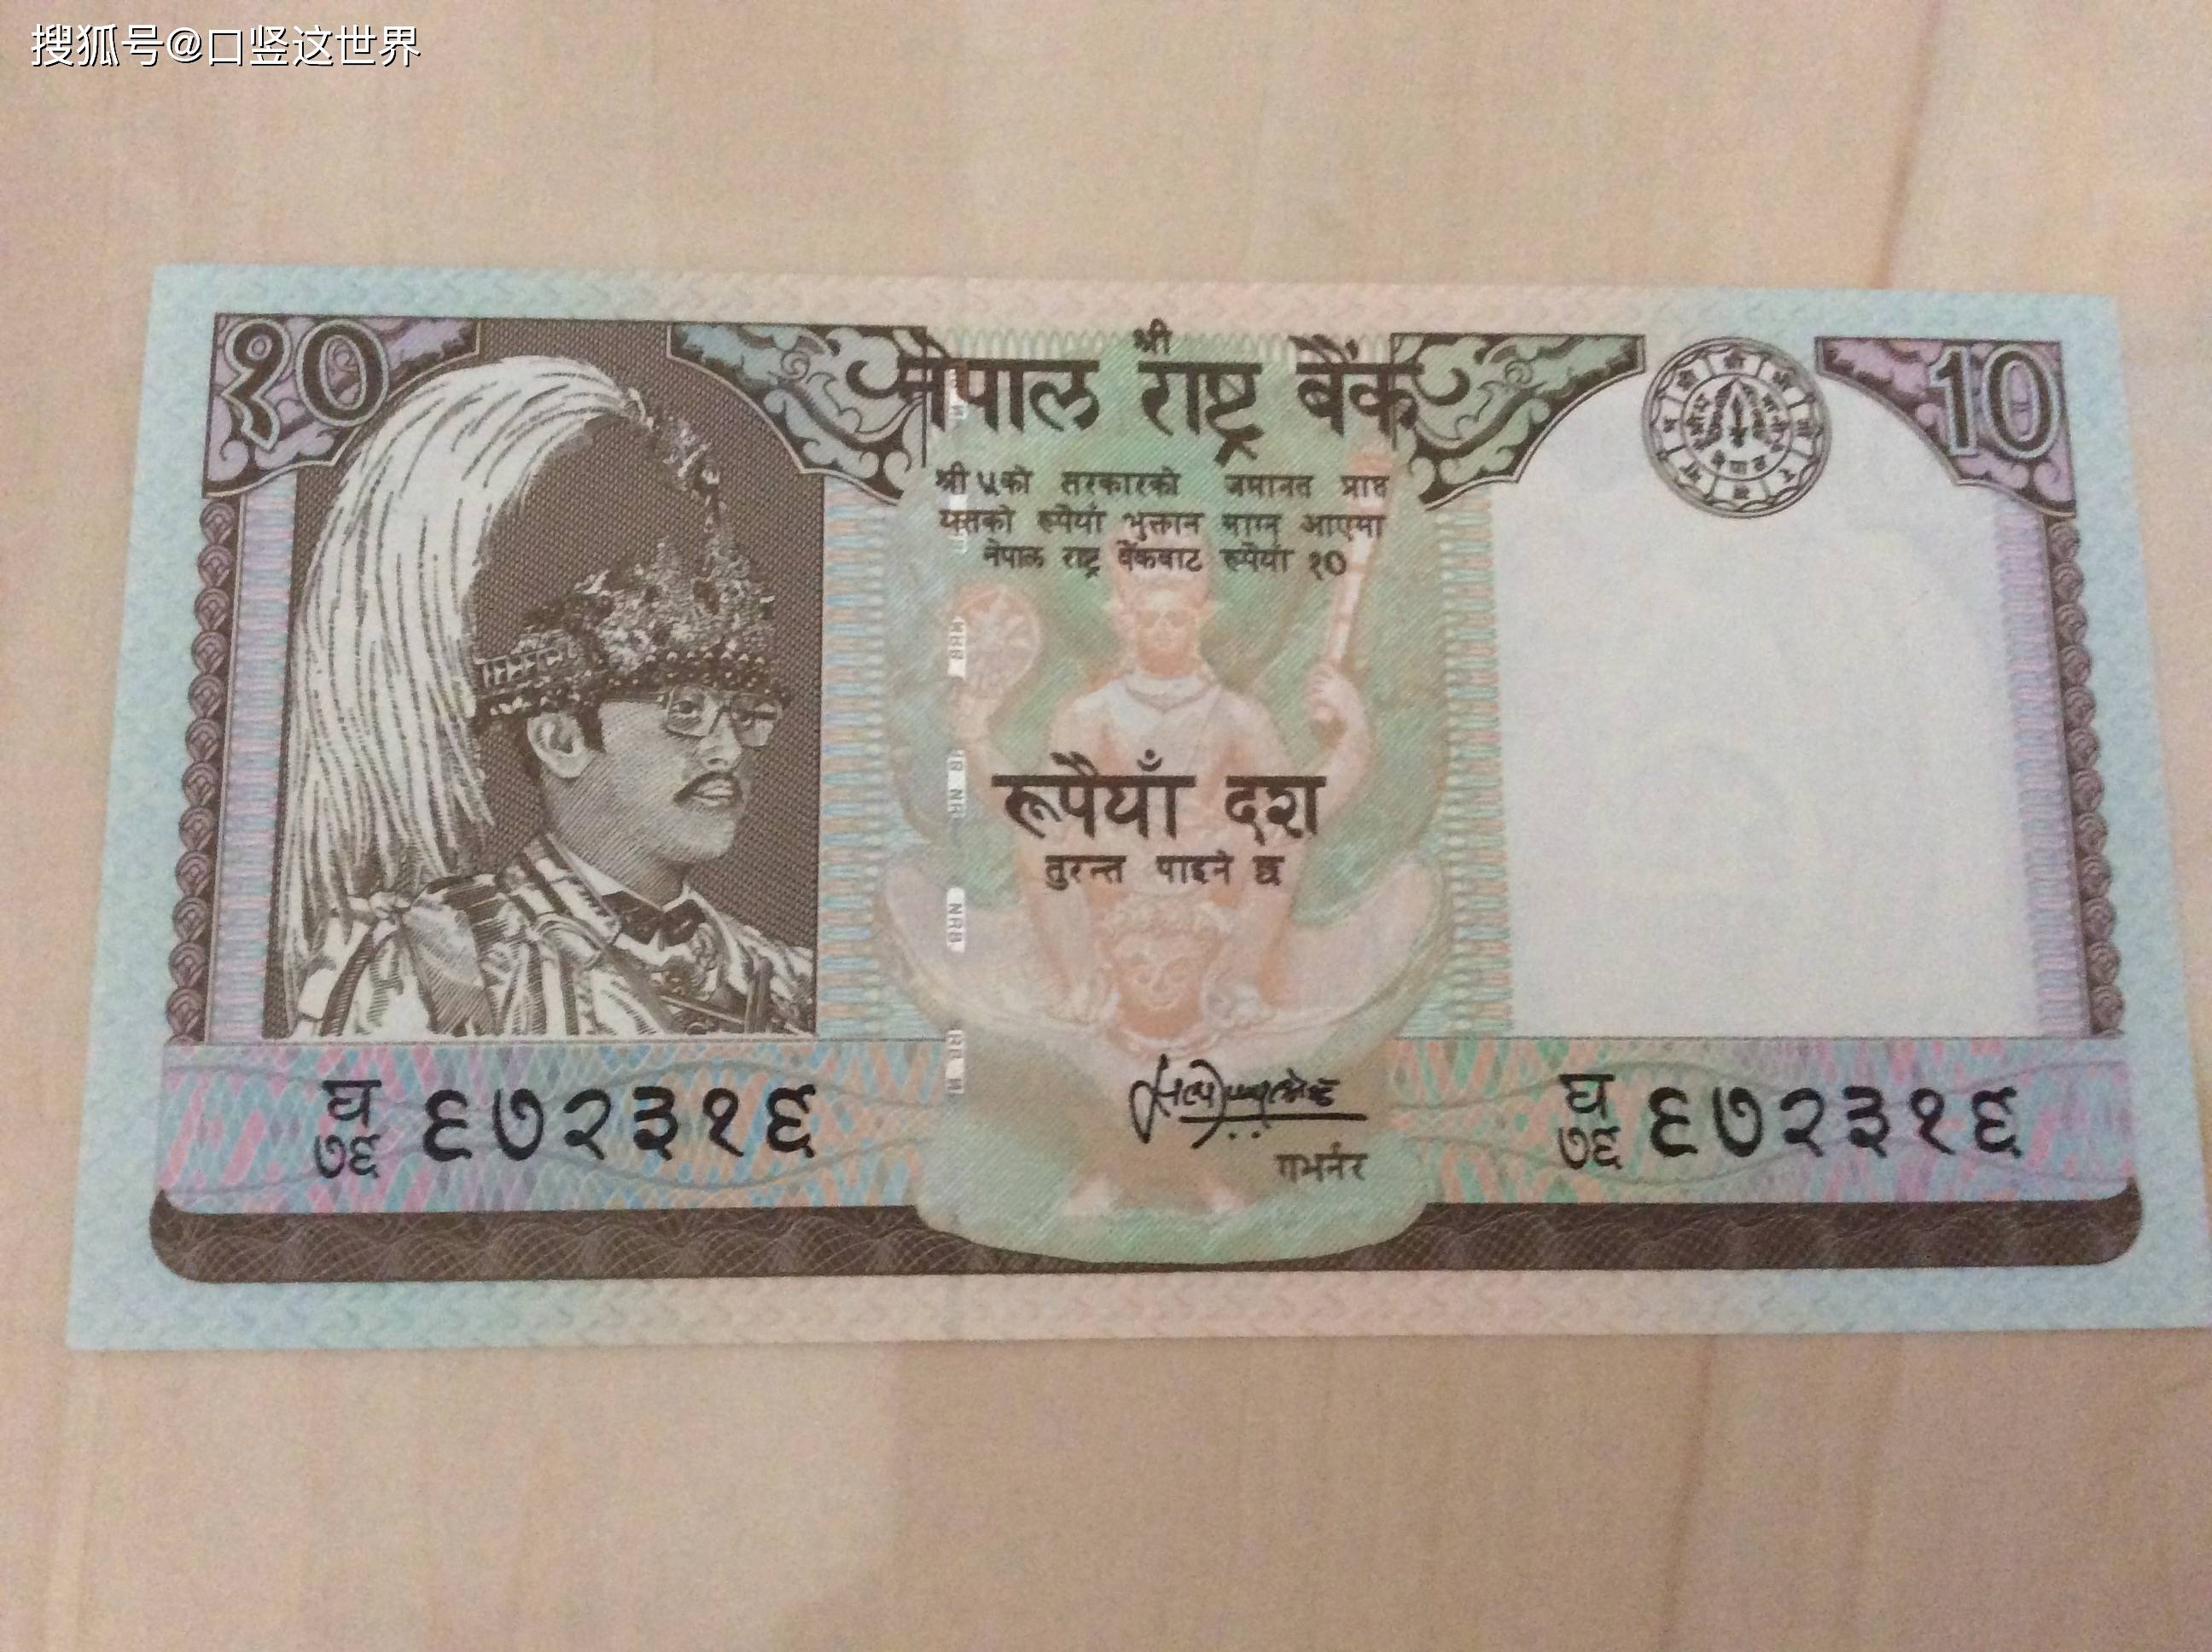 尼泊尔上世纪的国王版10卢比